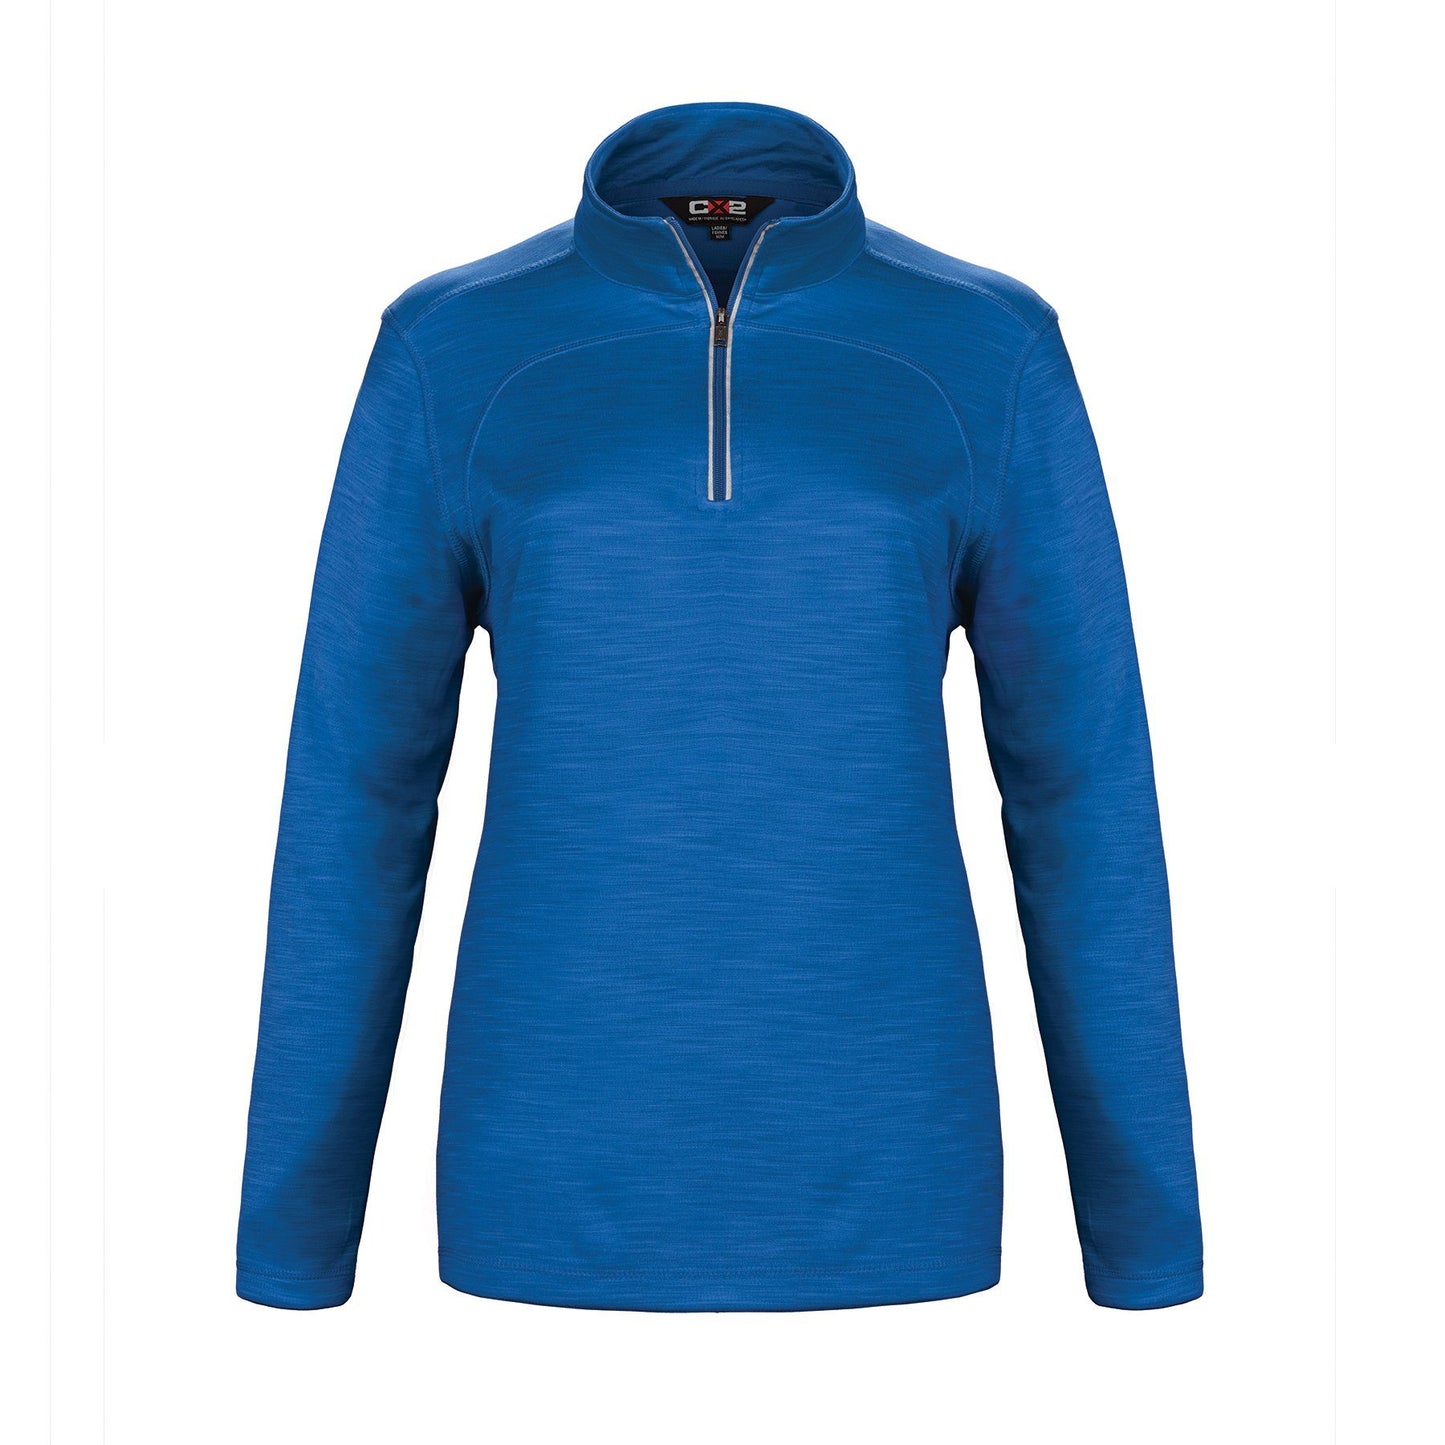 Canada Sportswear  - Lightweight Zip Sweater: Women's Cut Quarter Zip - L00876 - Cobalt Blue